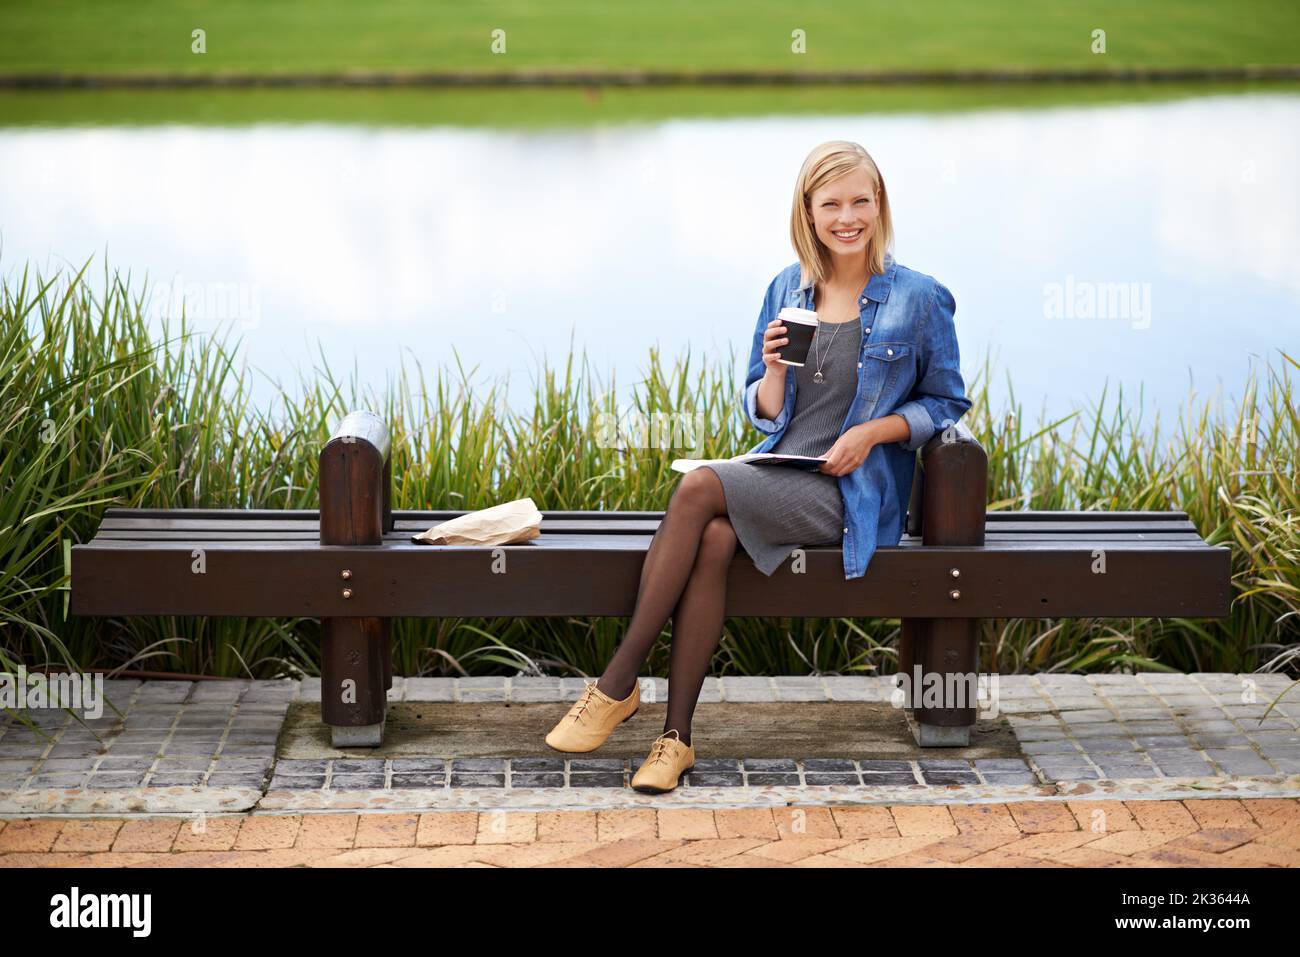 Faire compter son heure de déjeuner. Une jolie femme blonde lisant un livre pendant sa pause déjeuner sur un banc de parc. Banque D'Images